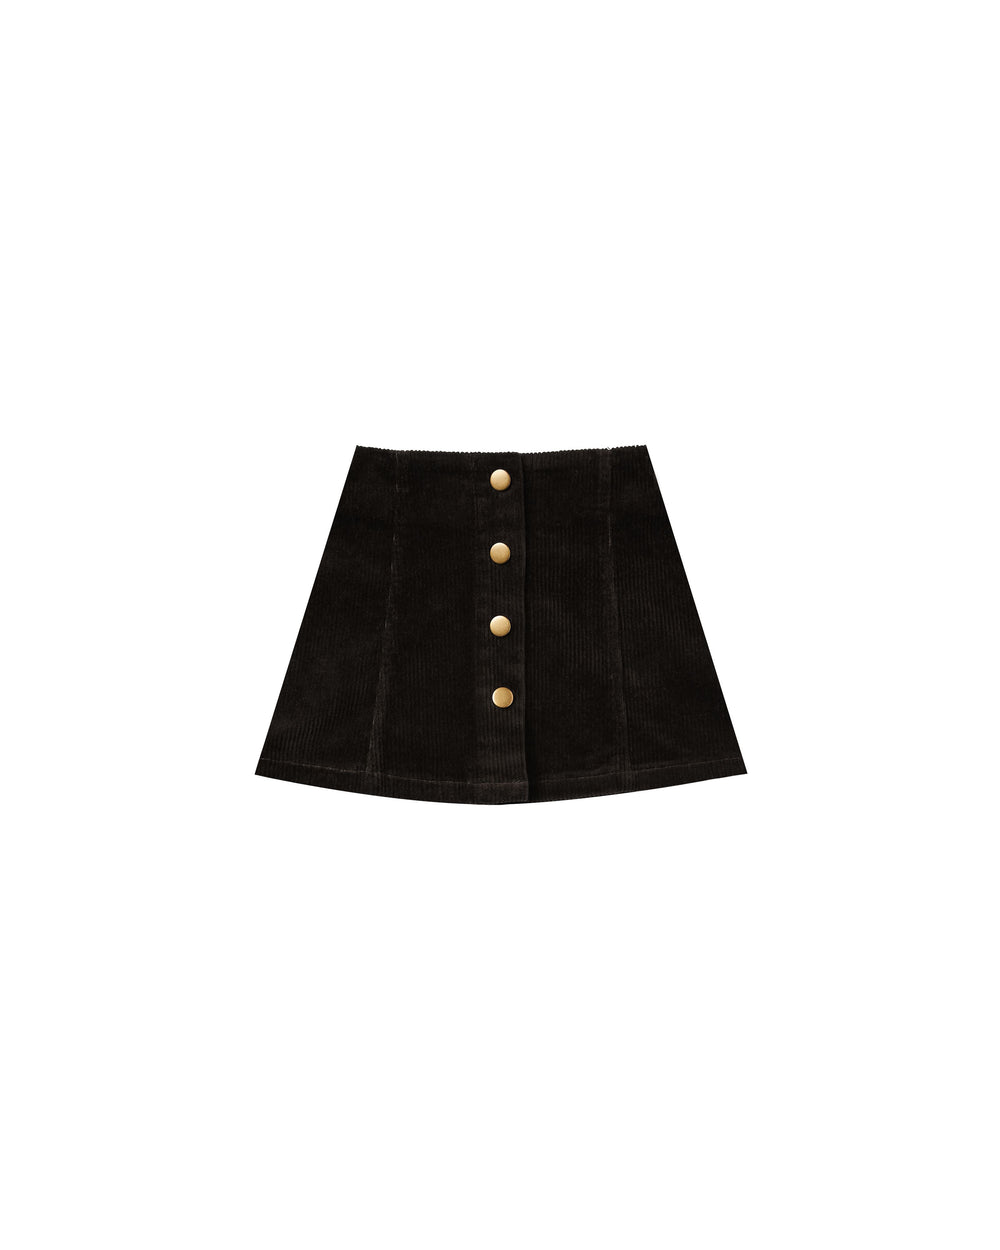 Corduroy mini skirt || Vintage black